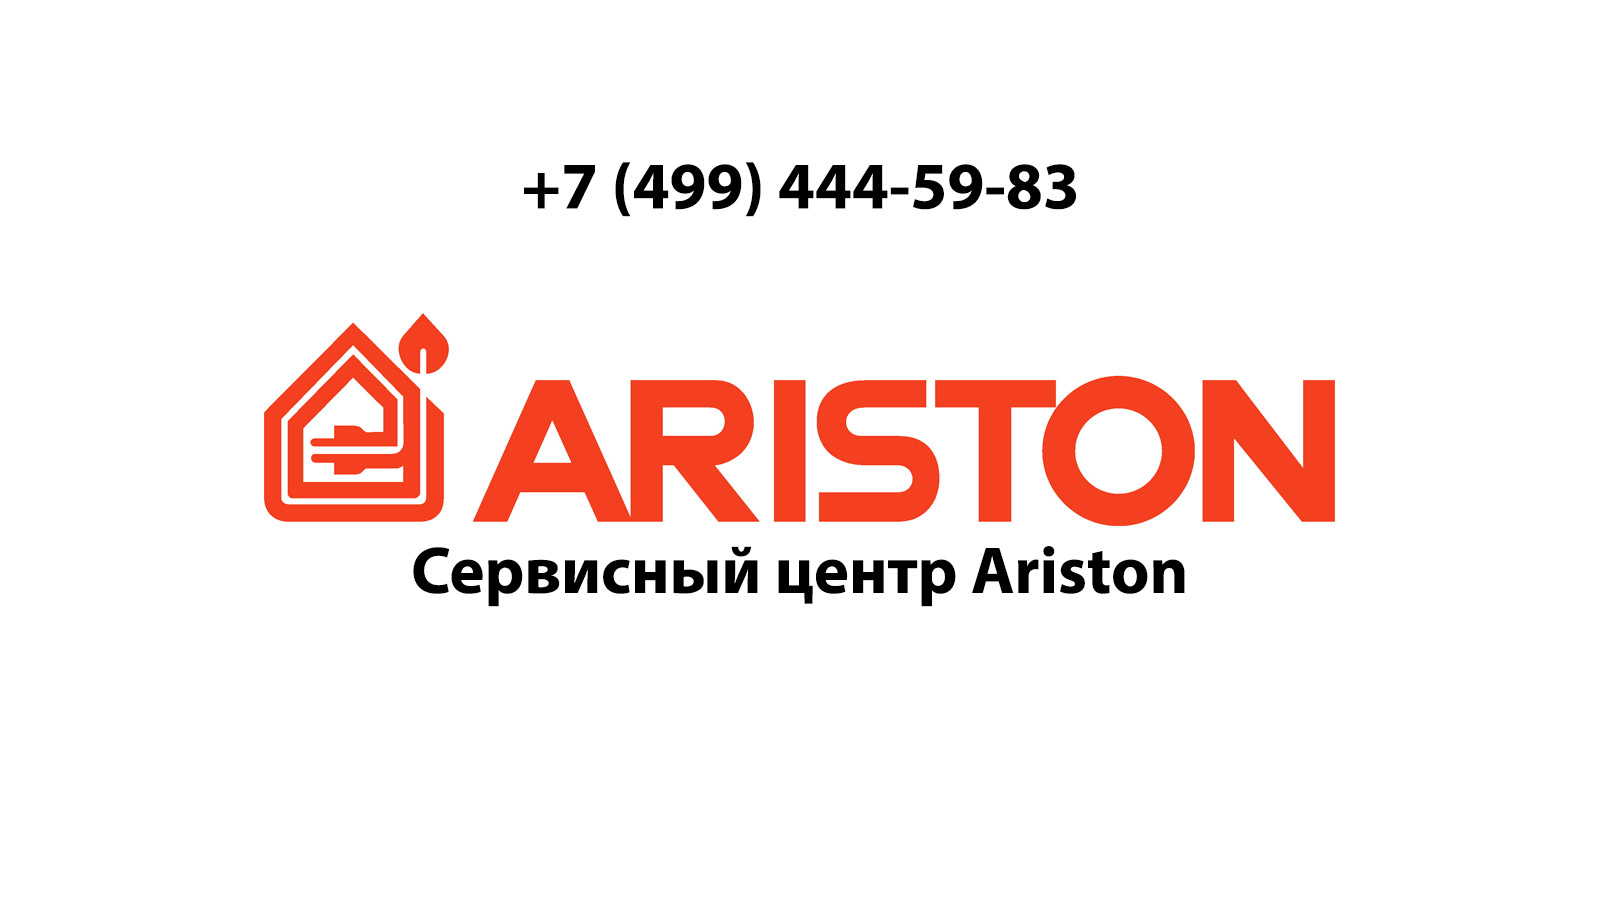 Ariston com. Ariston service. Реклама Аристон. Ariston котлы логотип. Сервисный центр Аристон.